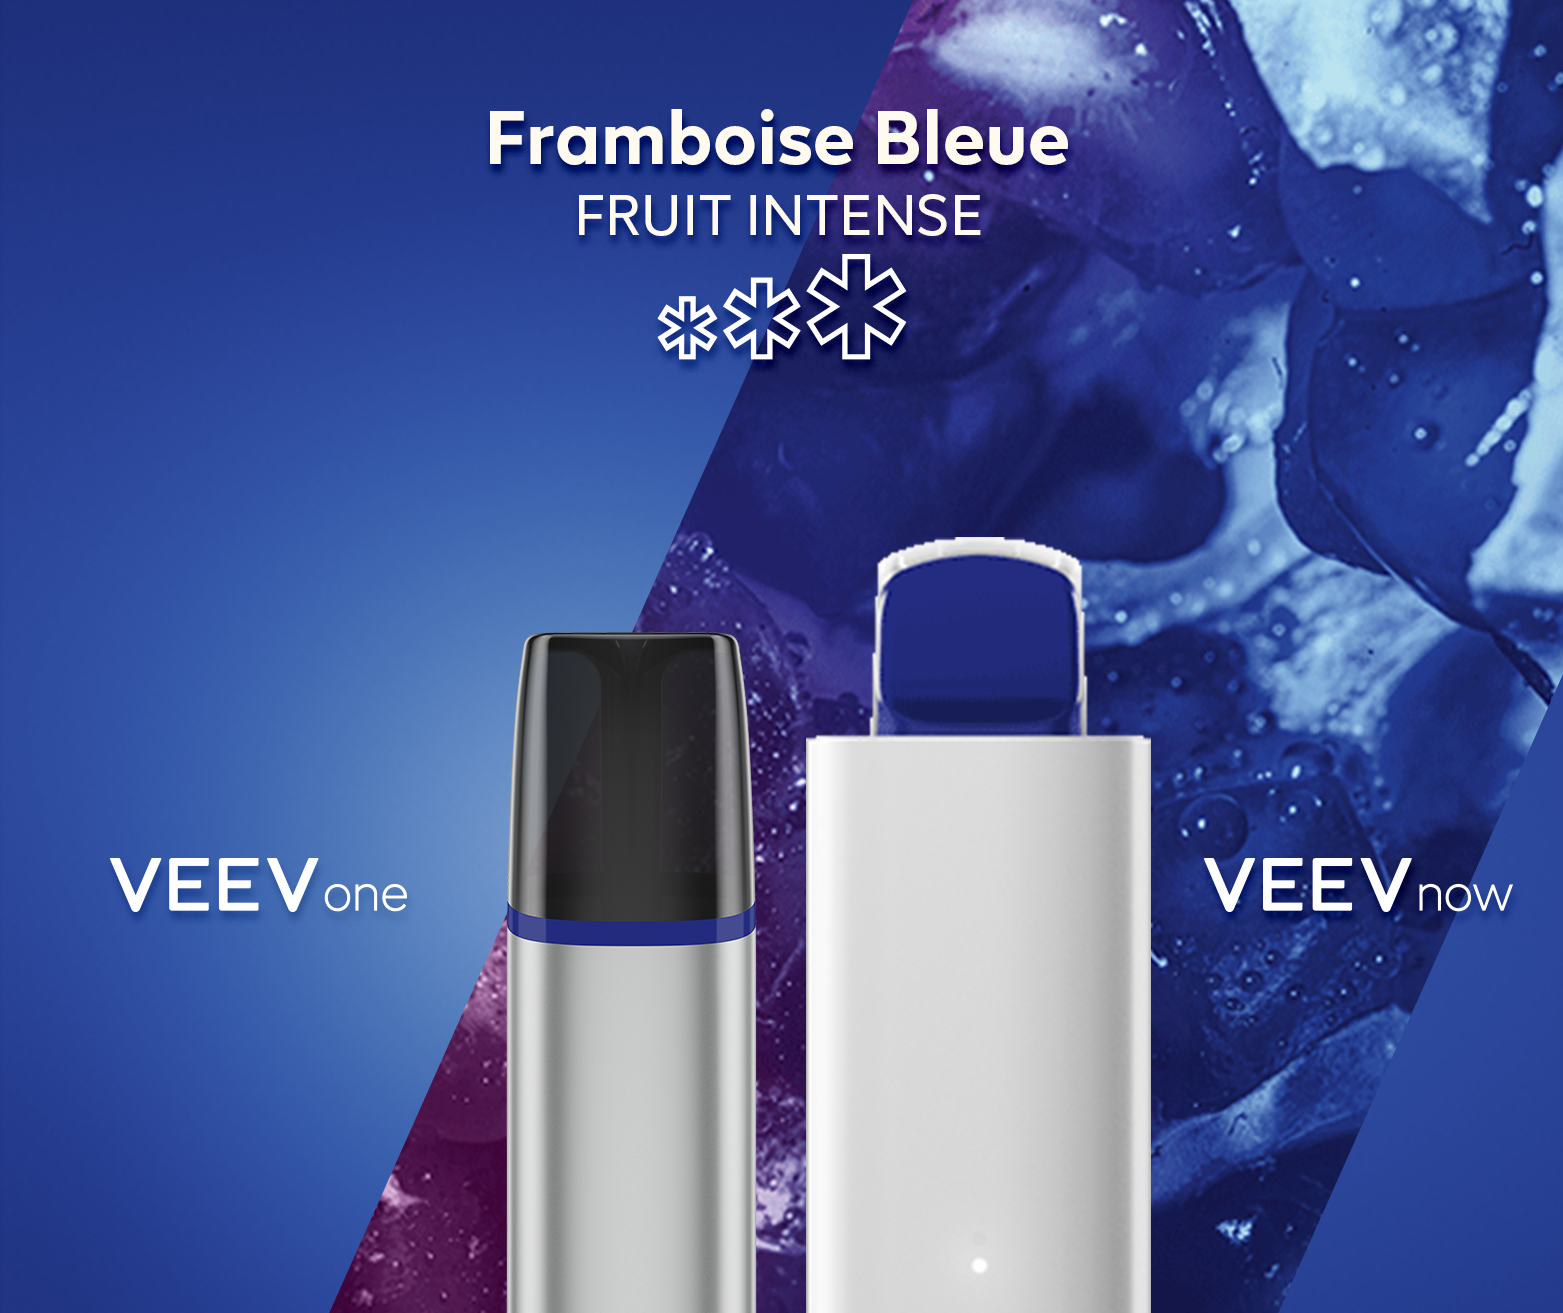 Appareil VEEV ONE et VEEV NOW Framboise bleue 5 ml jetable- Fruit intense